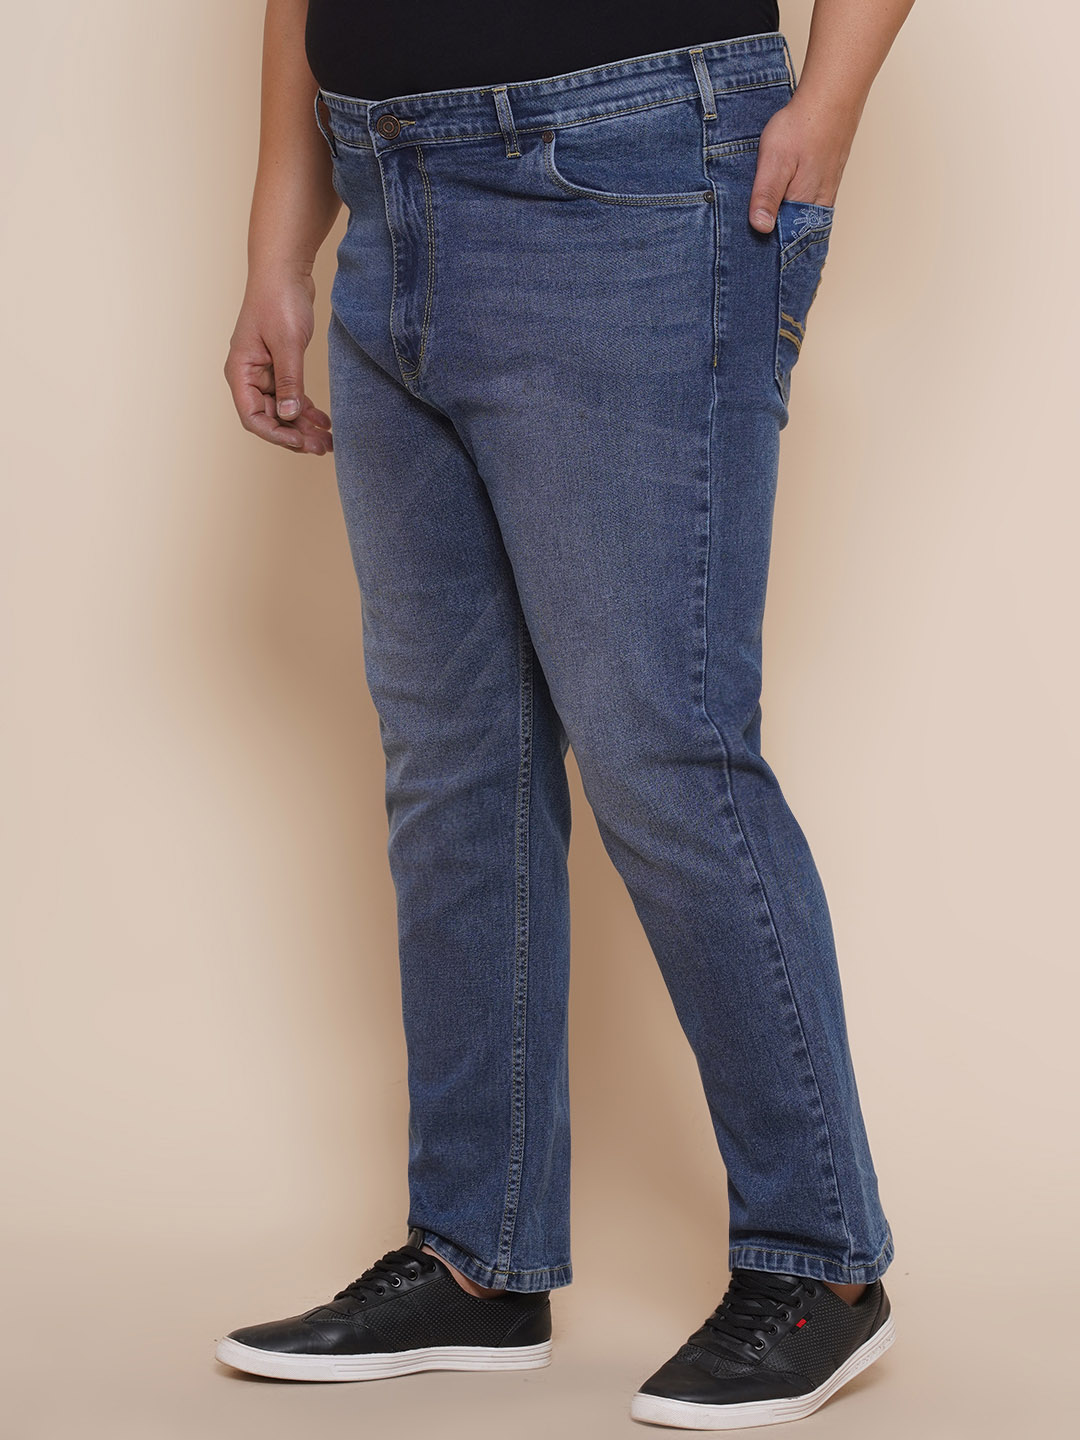 bottomwear/jeans/EJPJ25084/ejpj25084-4.jpg